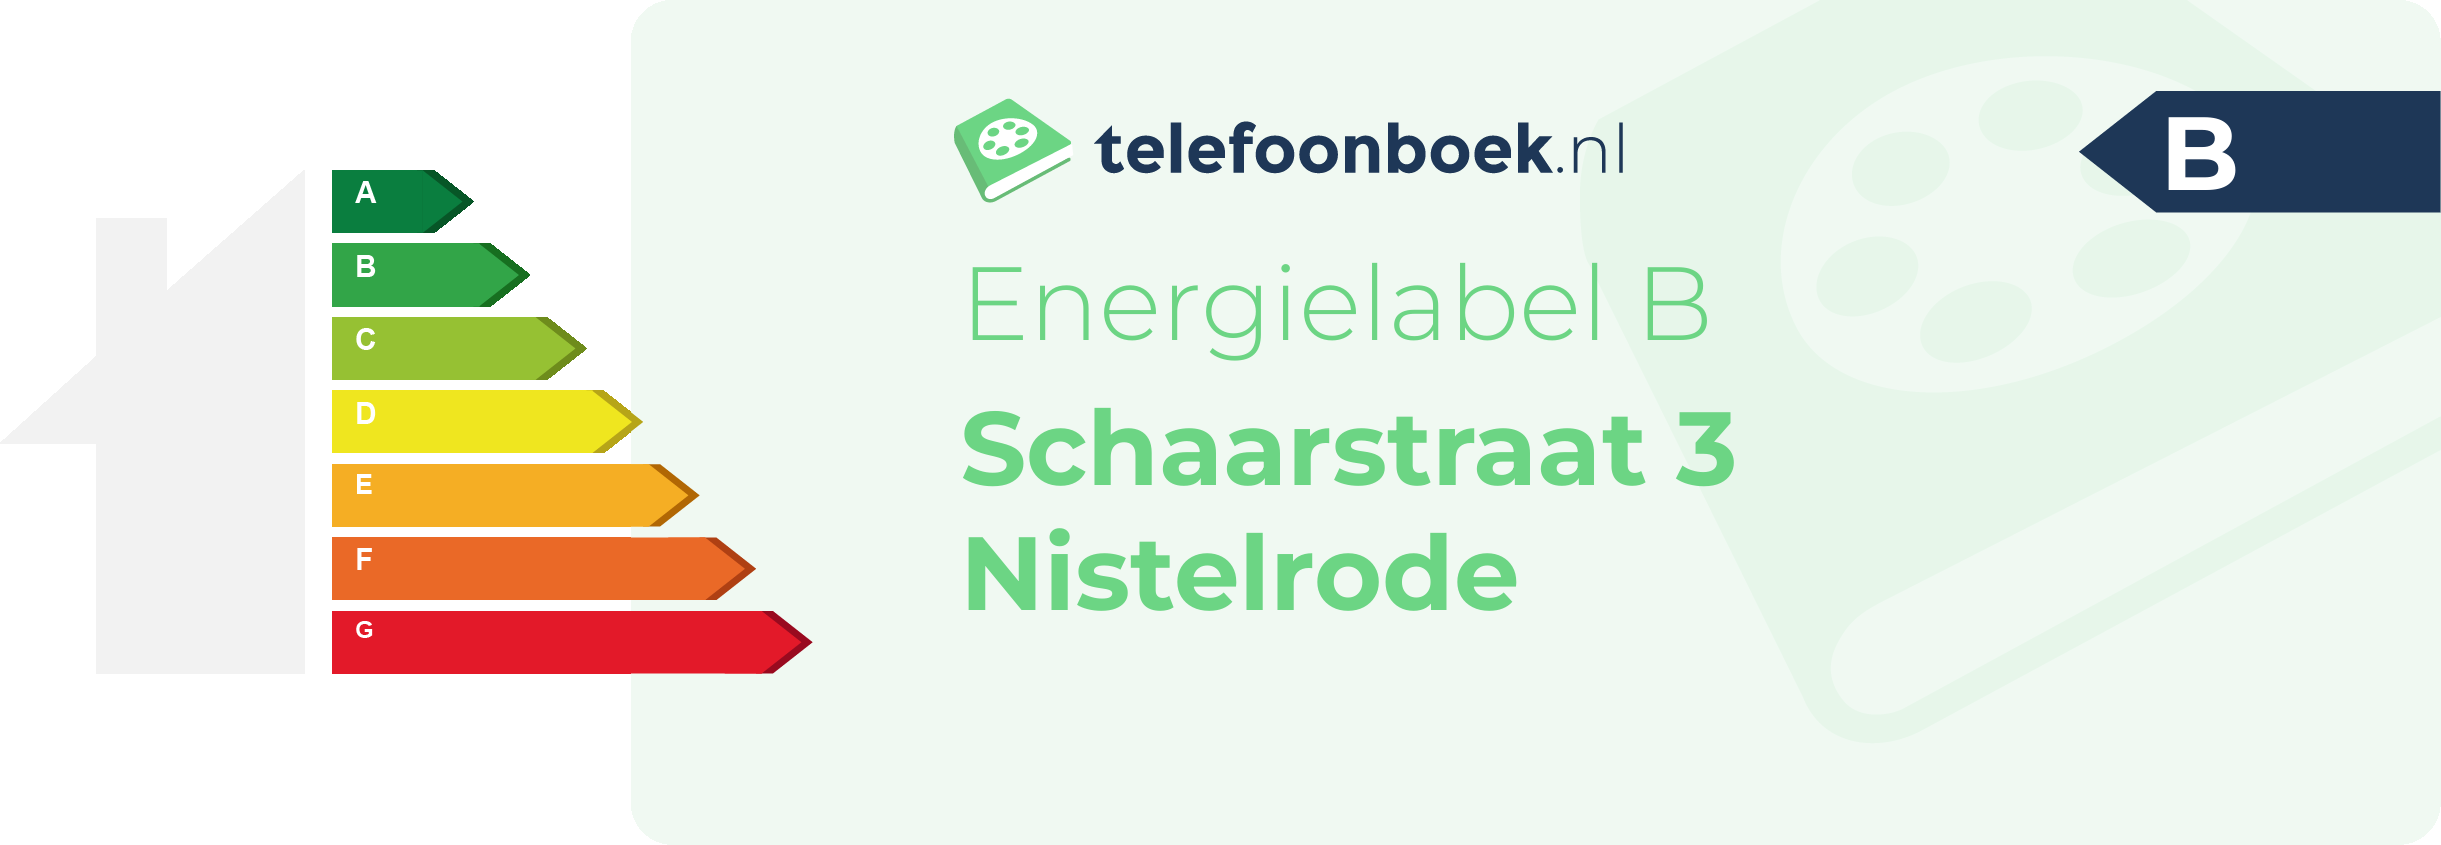 Energielabel Schaarstraat 3 Nistelrode